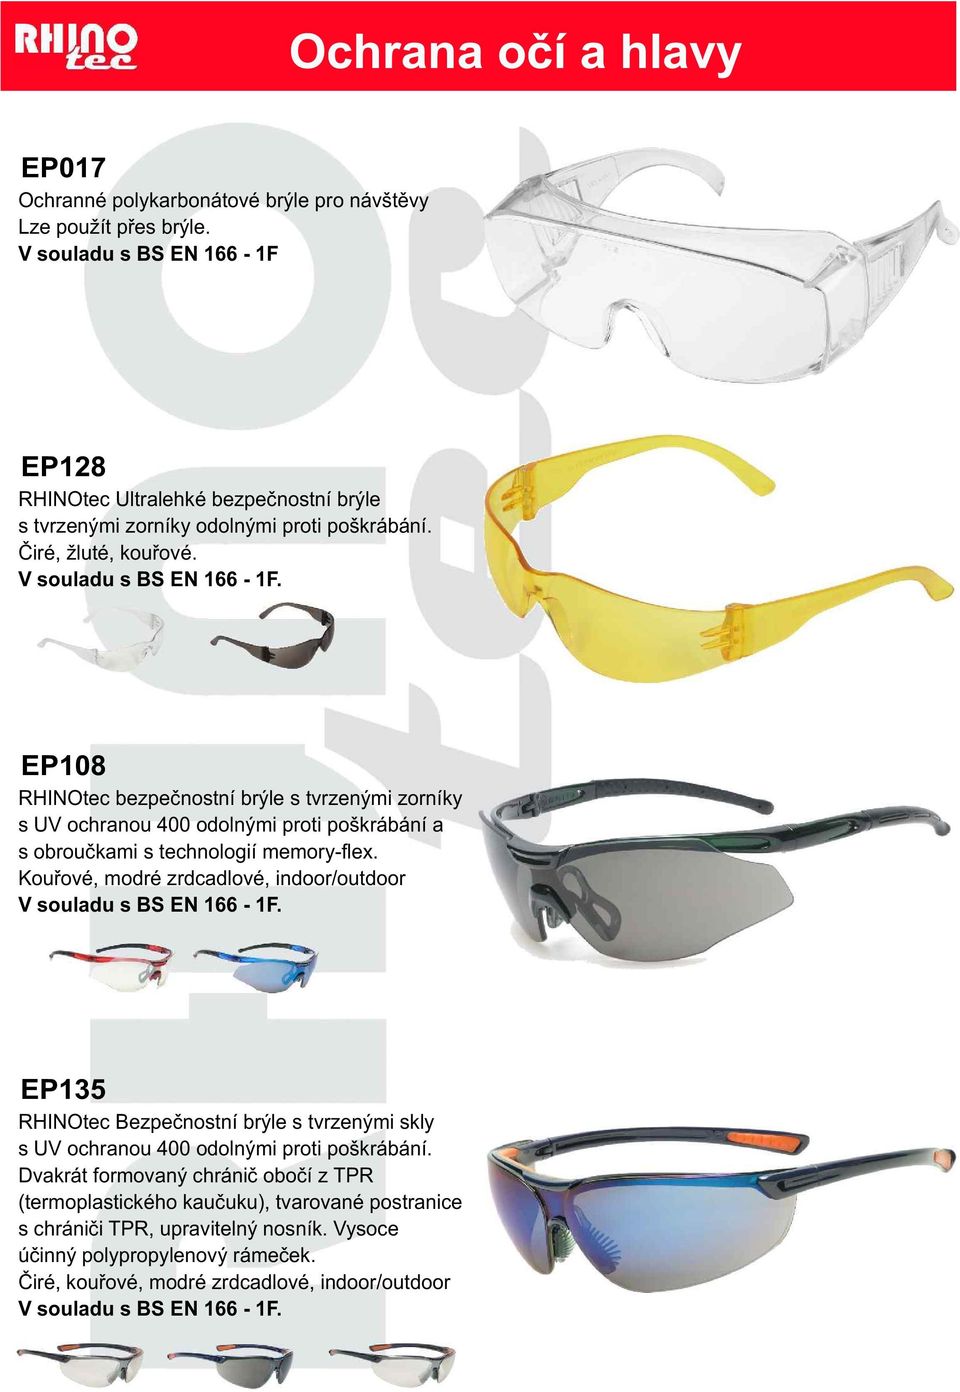 EP108 RHINOtec bezpeènostní brýle s tvrzenými zorníky s UV ochranou 400 odolnými proti poškrábání a s obrouèkami s technologií memory-flex.